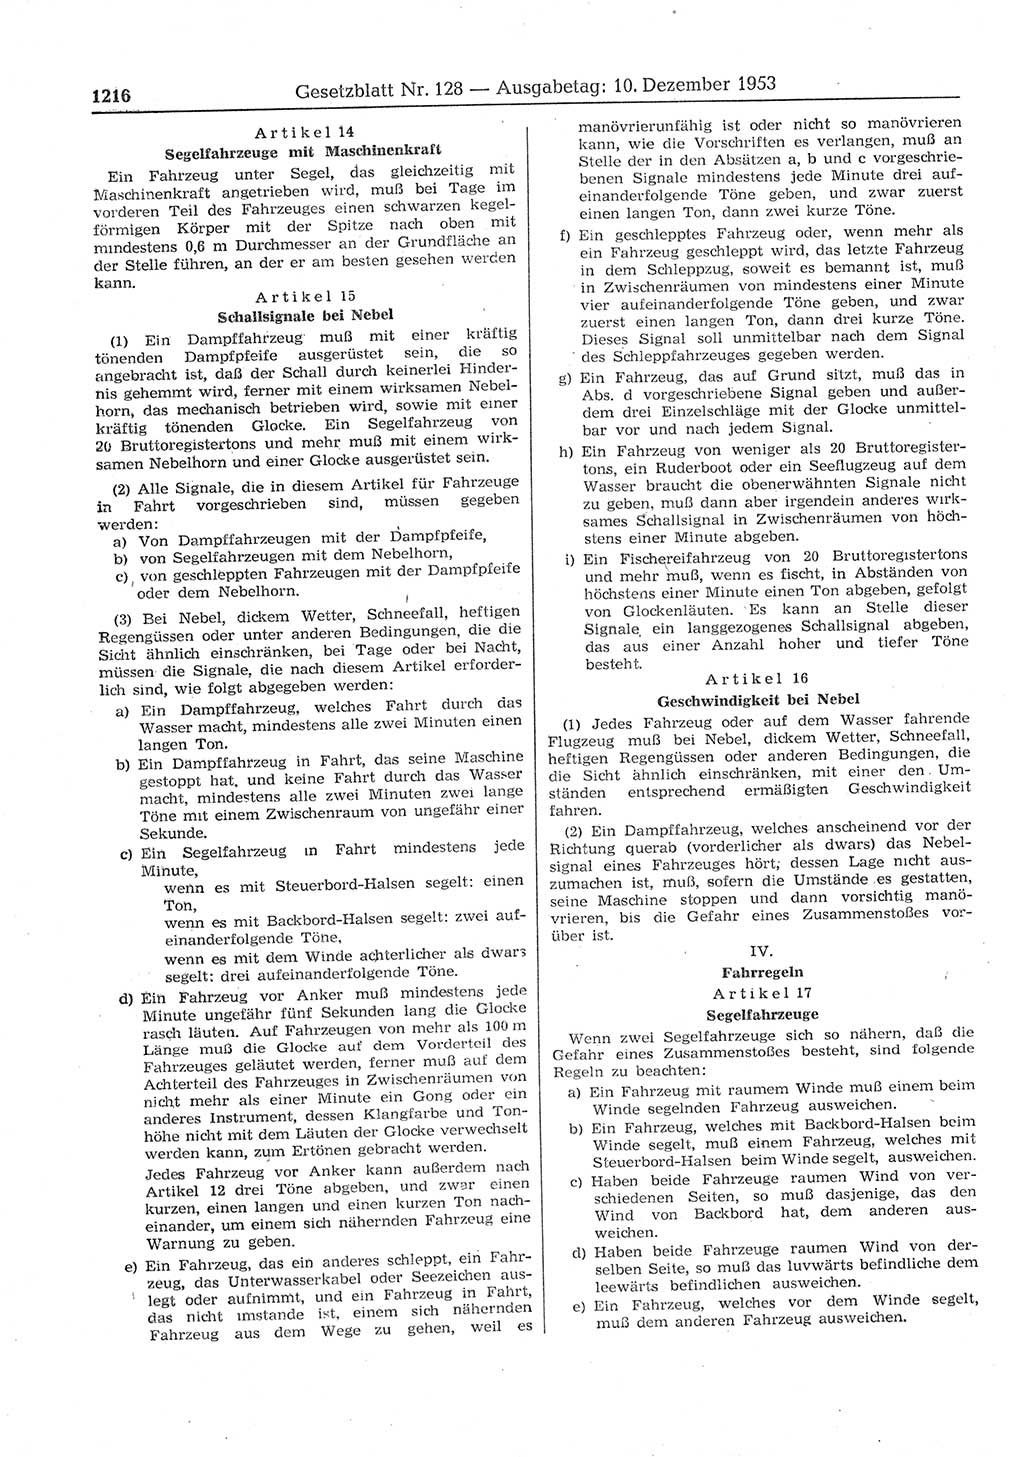 Gesetzblatt (GBl.) der Deutschen Demokratischen Republik (DDR) 1953, Seite 1216 (GBl. DDR 1953, S. 1216)